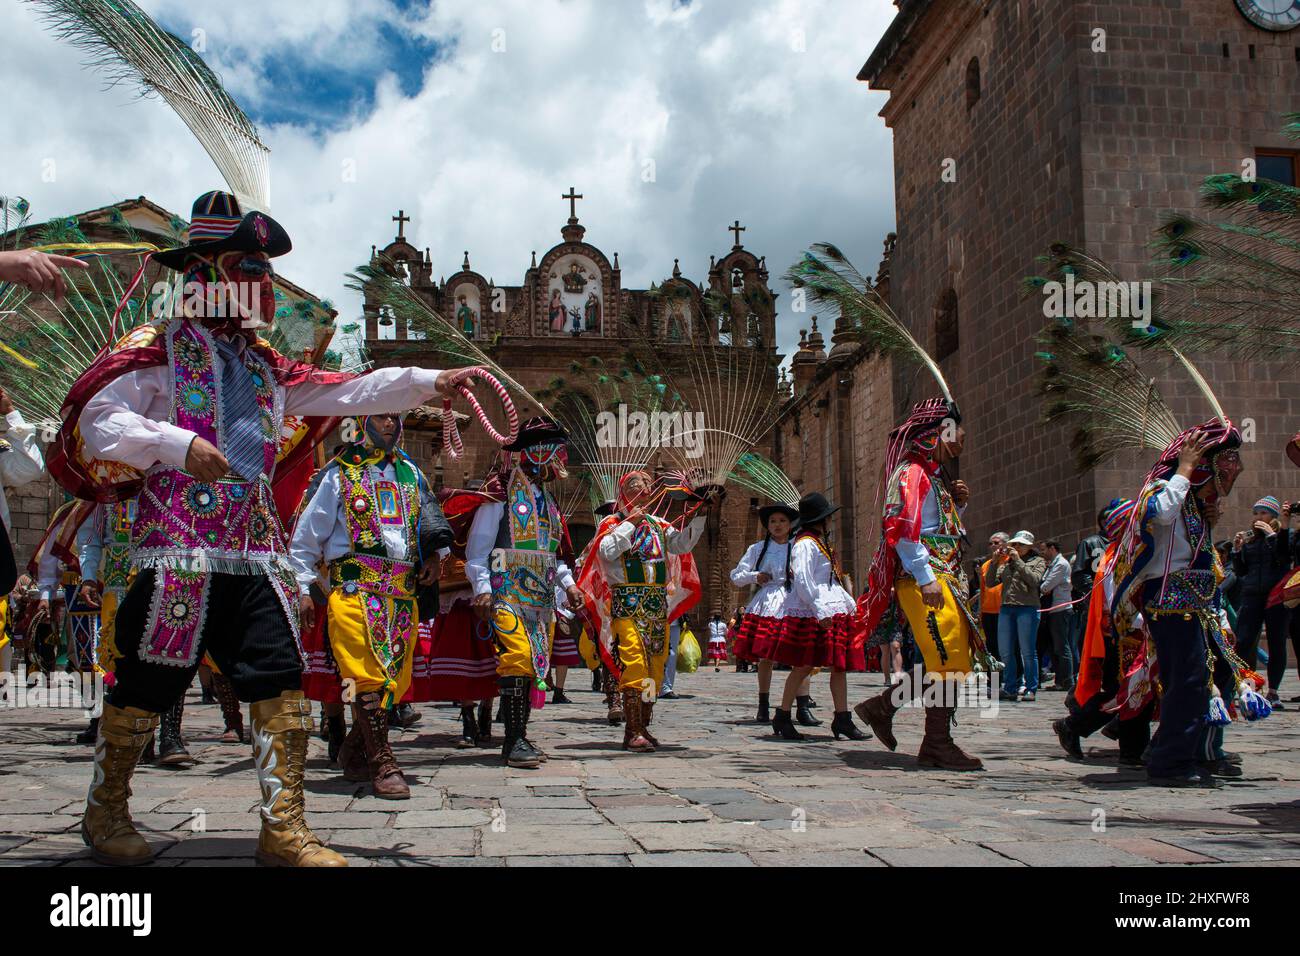 Cuzco, Perú - 25 de diciembre de 2013: Un grupo de personas que visten ropa y máscaras tradicionales durante la Huaylia el día de Navidad frente al gato del Cuzco Foto de stock